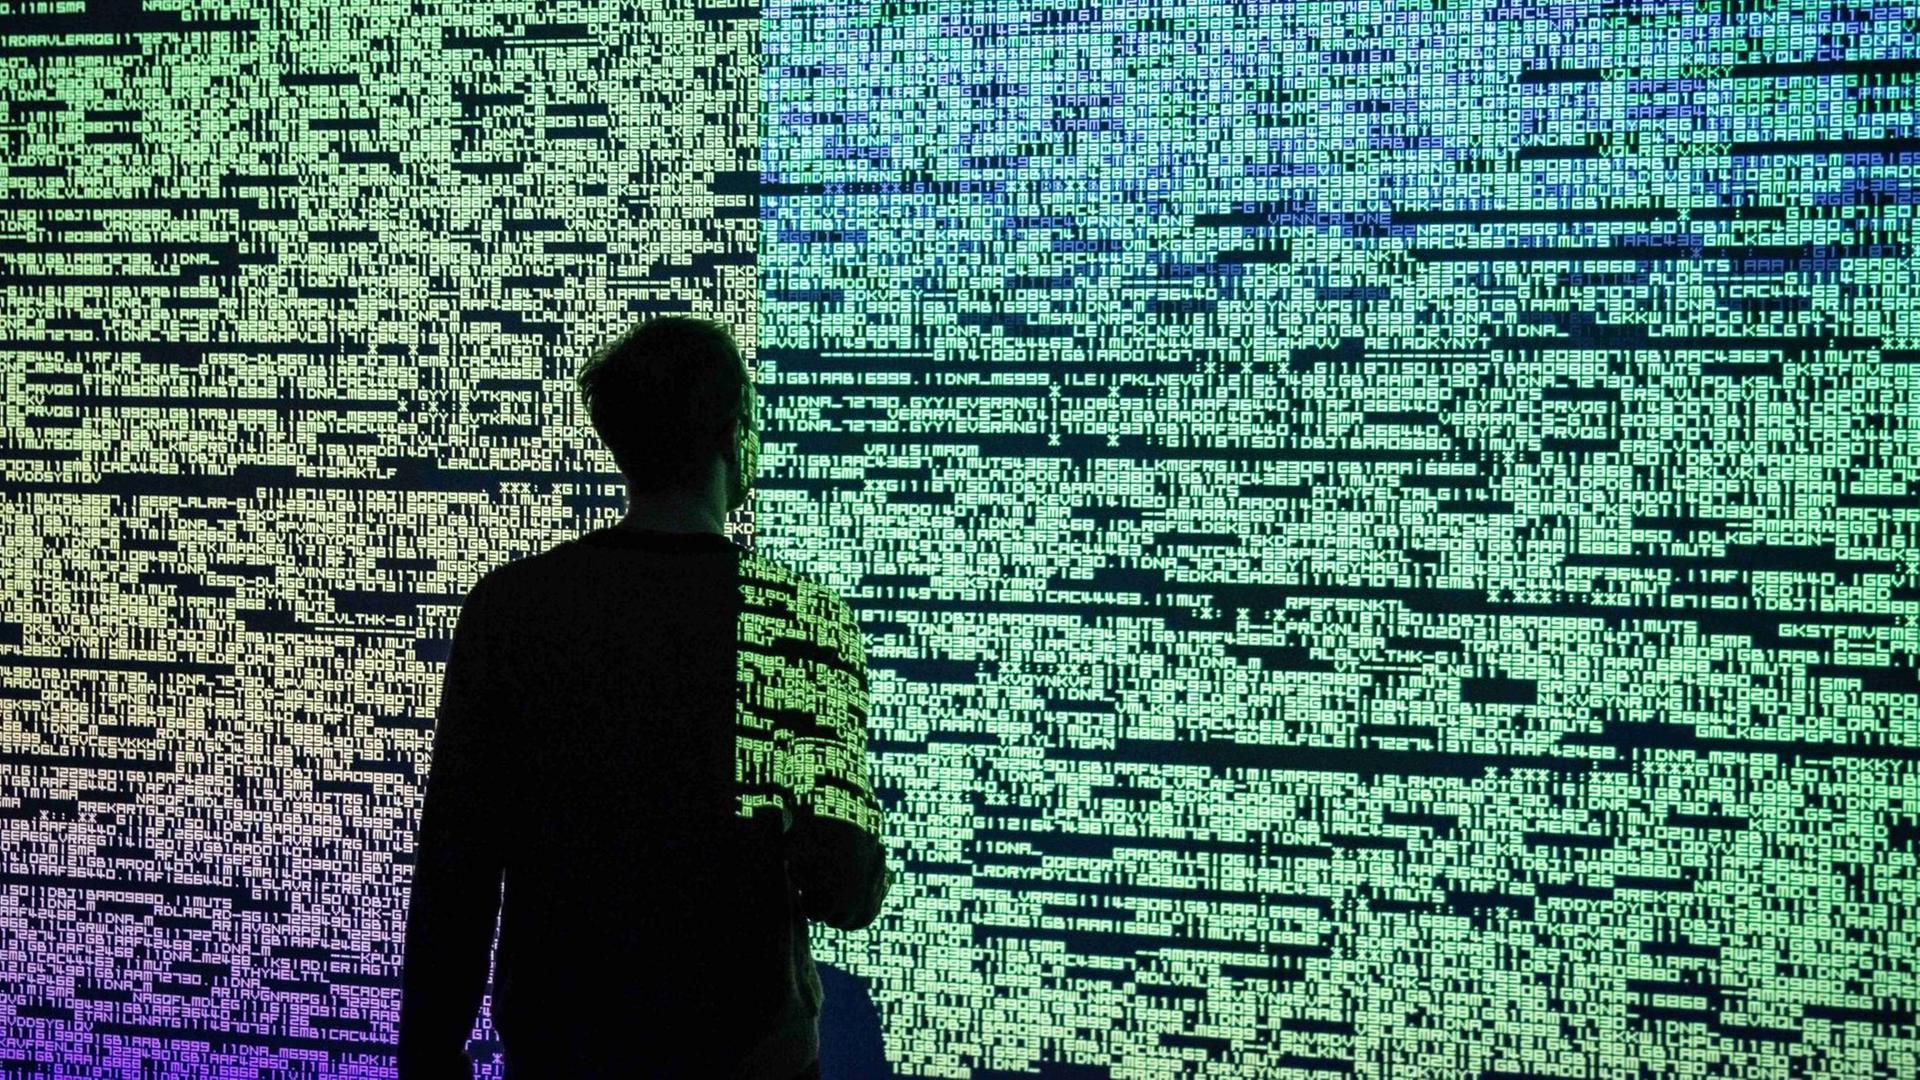 Ein Besucher betrachtet das Mulitmediaprojekt "Data Flux (12 XGA version)" des japanischen Künstlers Ryoji Ikeda im Onassis Cultural Center in Athen, aufgenommen im Februar 2019.